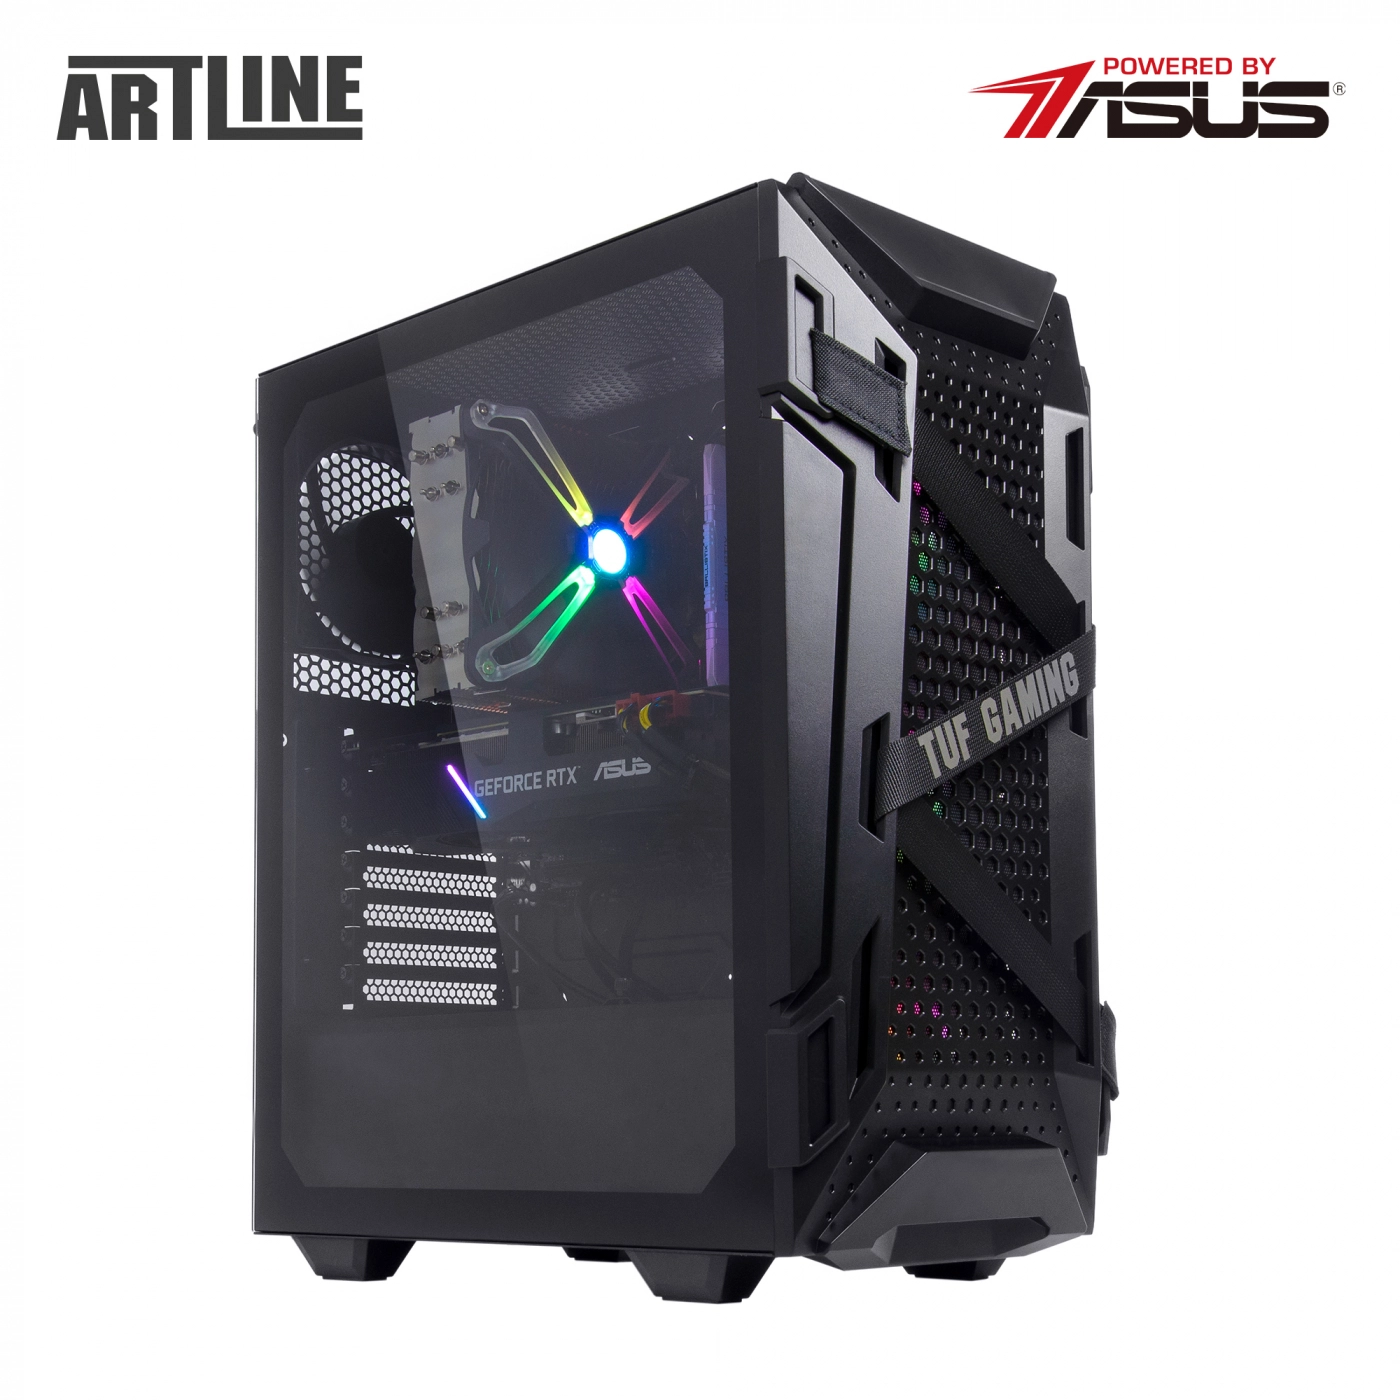 Купить Компьютер ARTLINE Gaming TUFv05 - фото 11